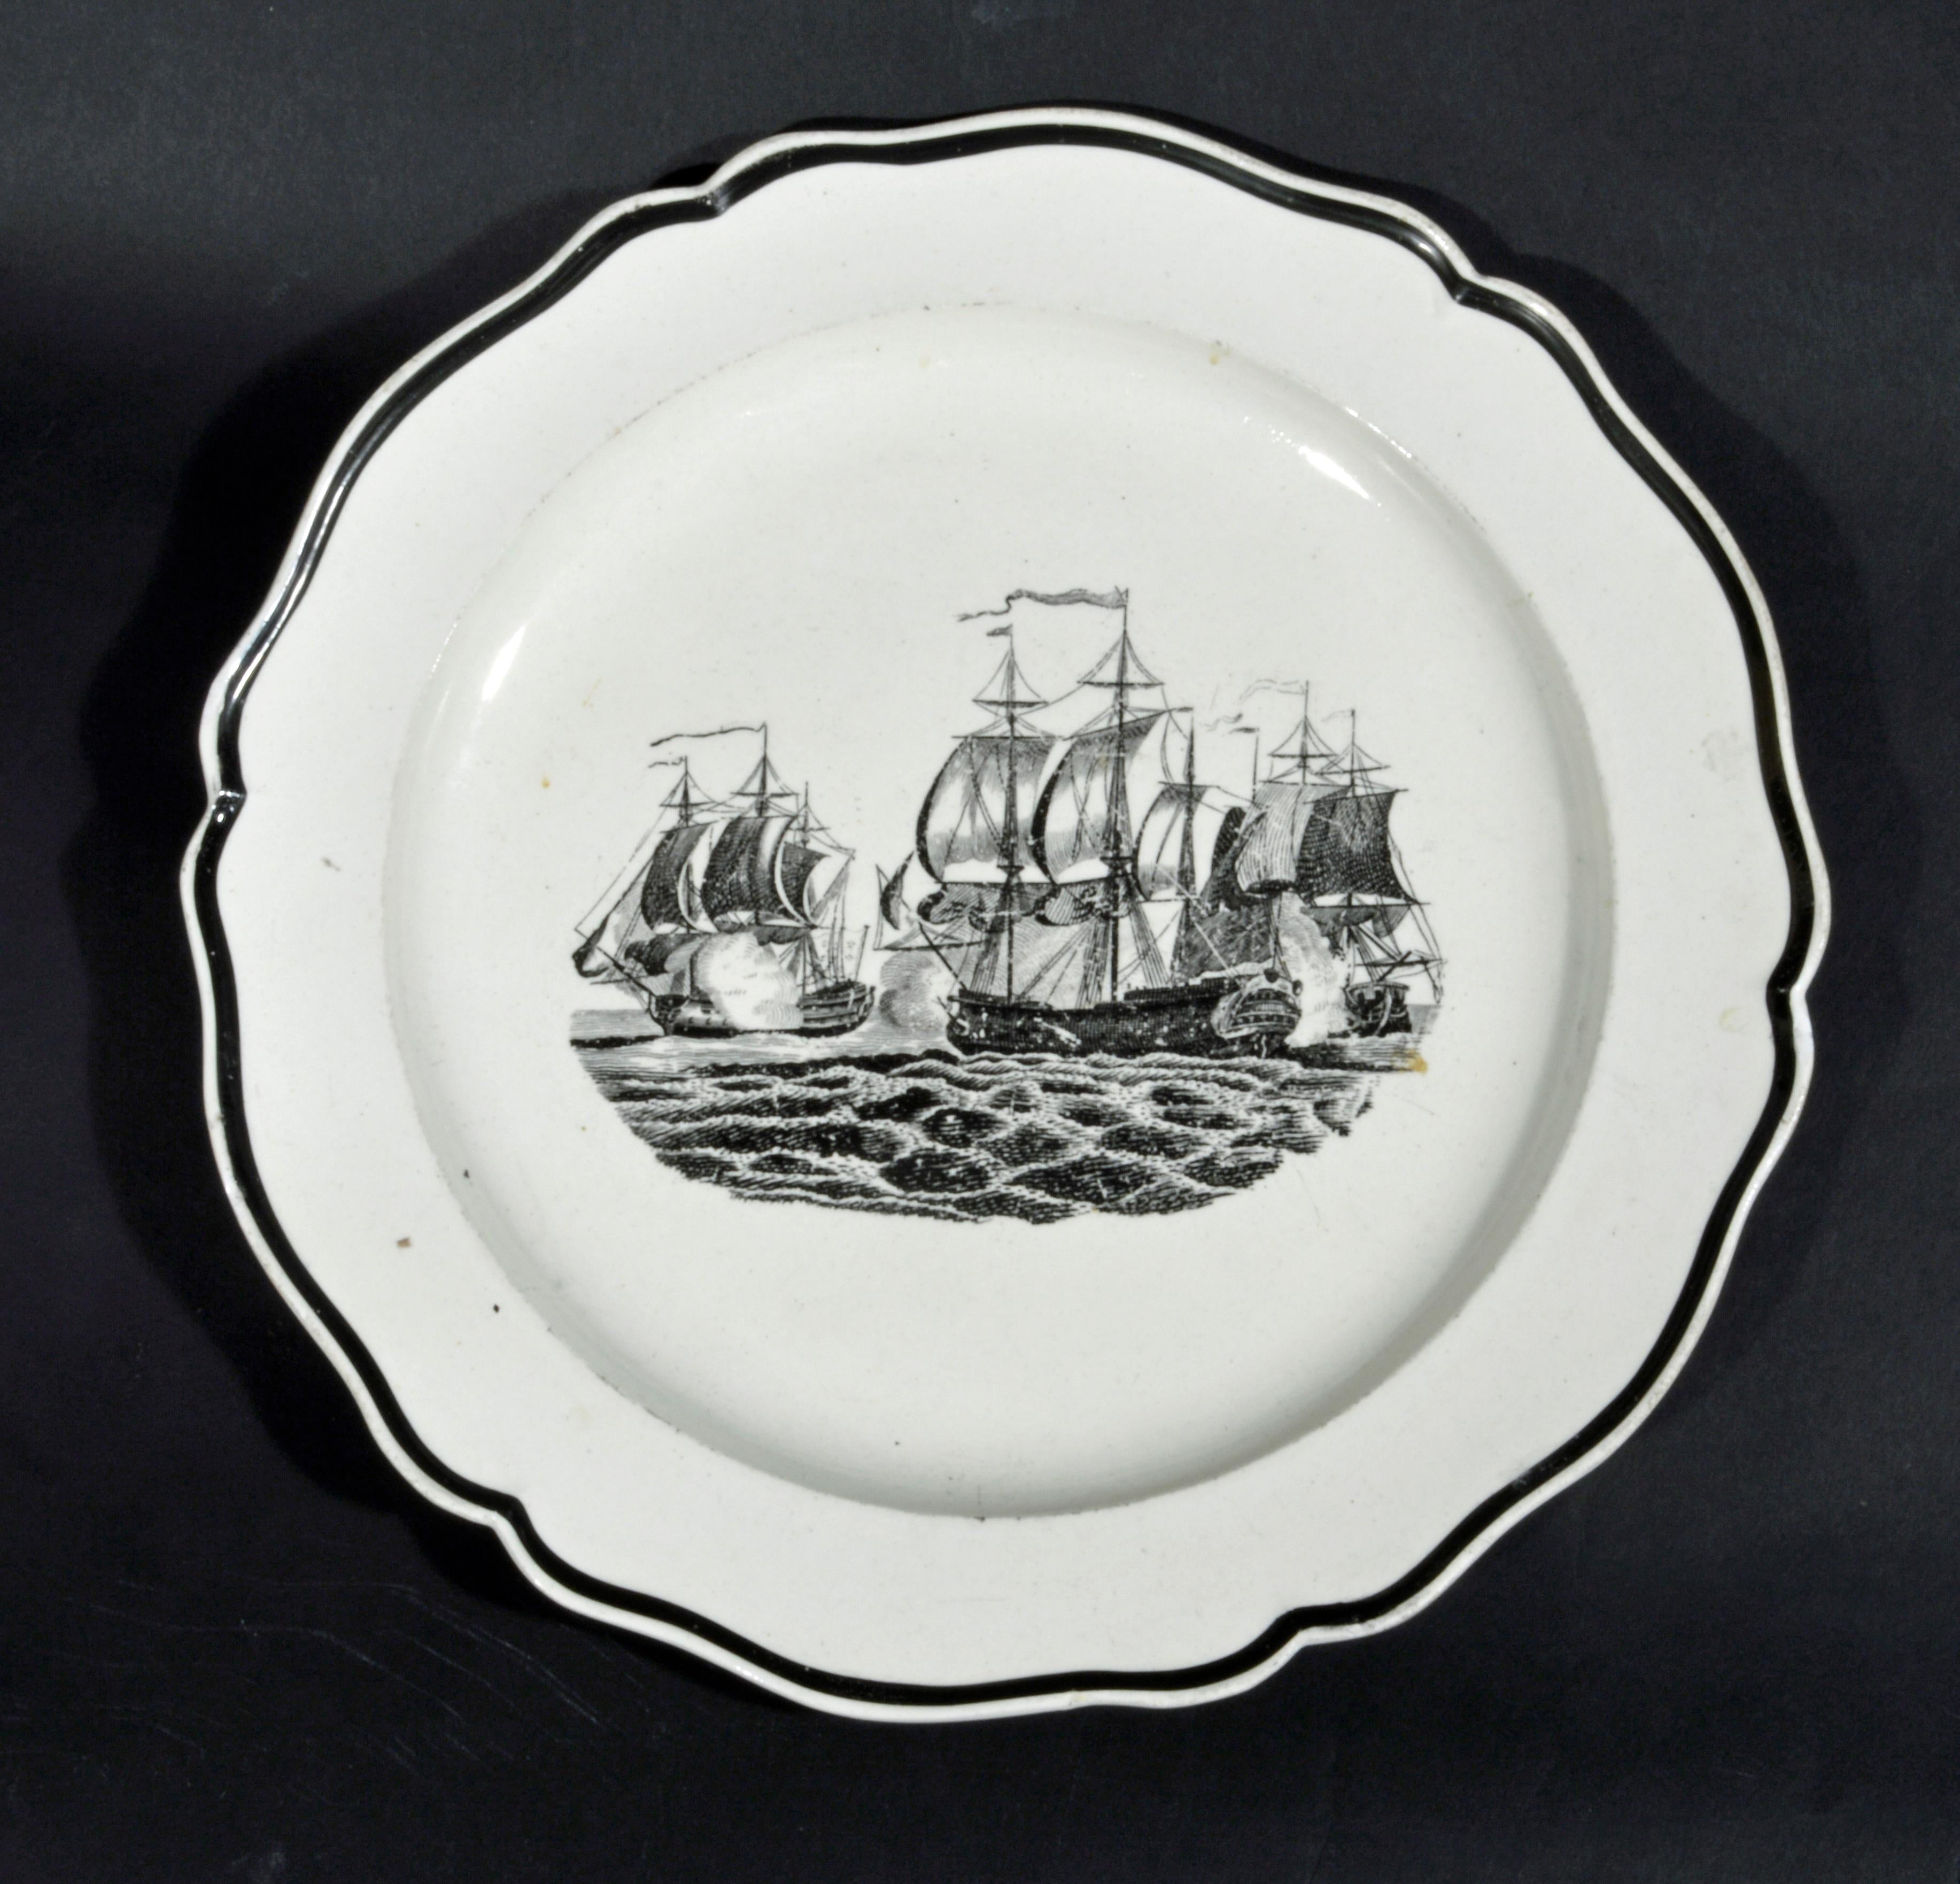 Assiettes en perles de Liverpool décorées de bateaux,
vers 1800.
(NY7150B)

Les assiettes en grès perlé à bord noir de la poterie de Liverpool sont chacune imprimée de l'image d'un engagement naval.

Diamètre : 9 3/4 pouces

Les assiettes en